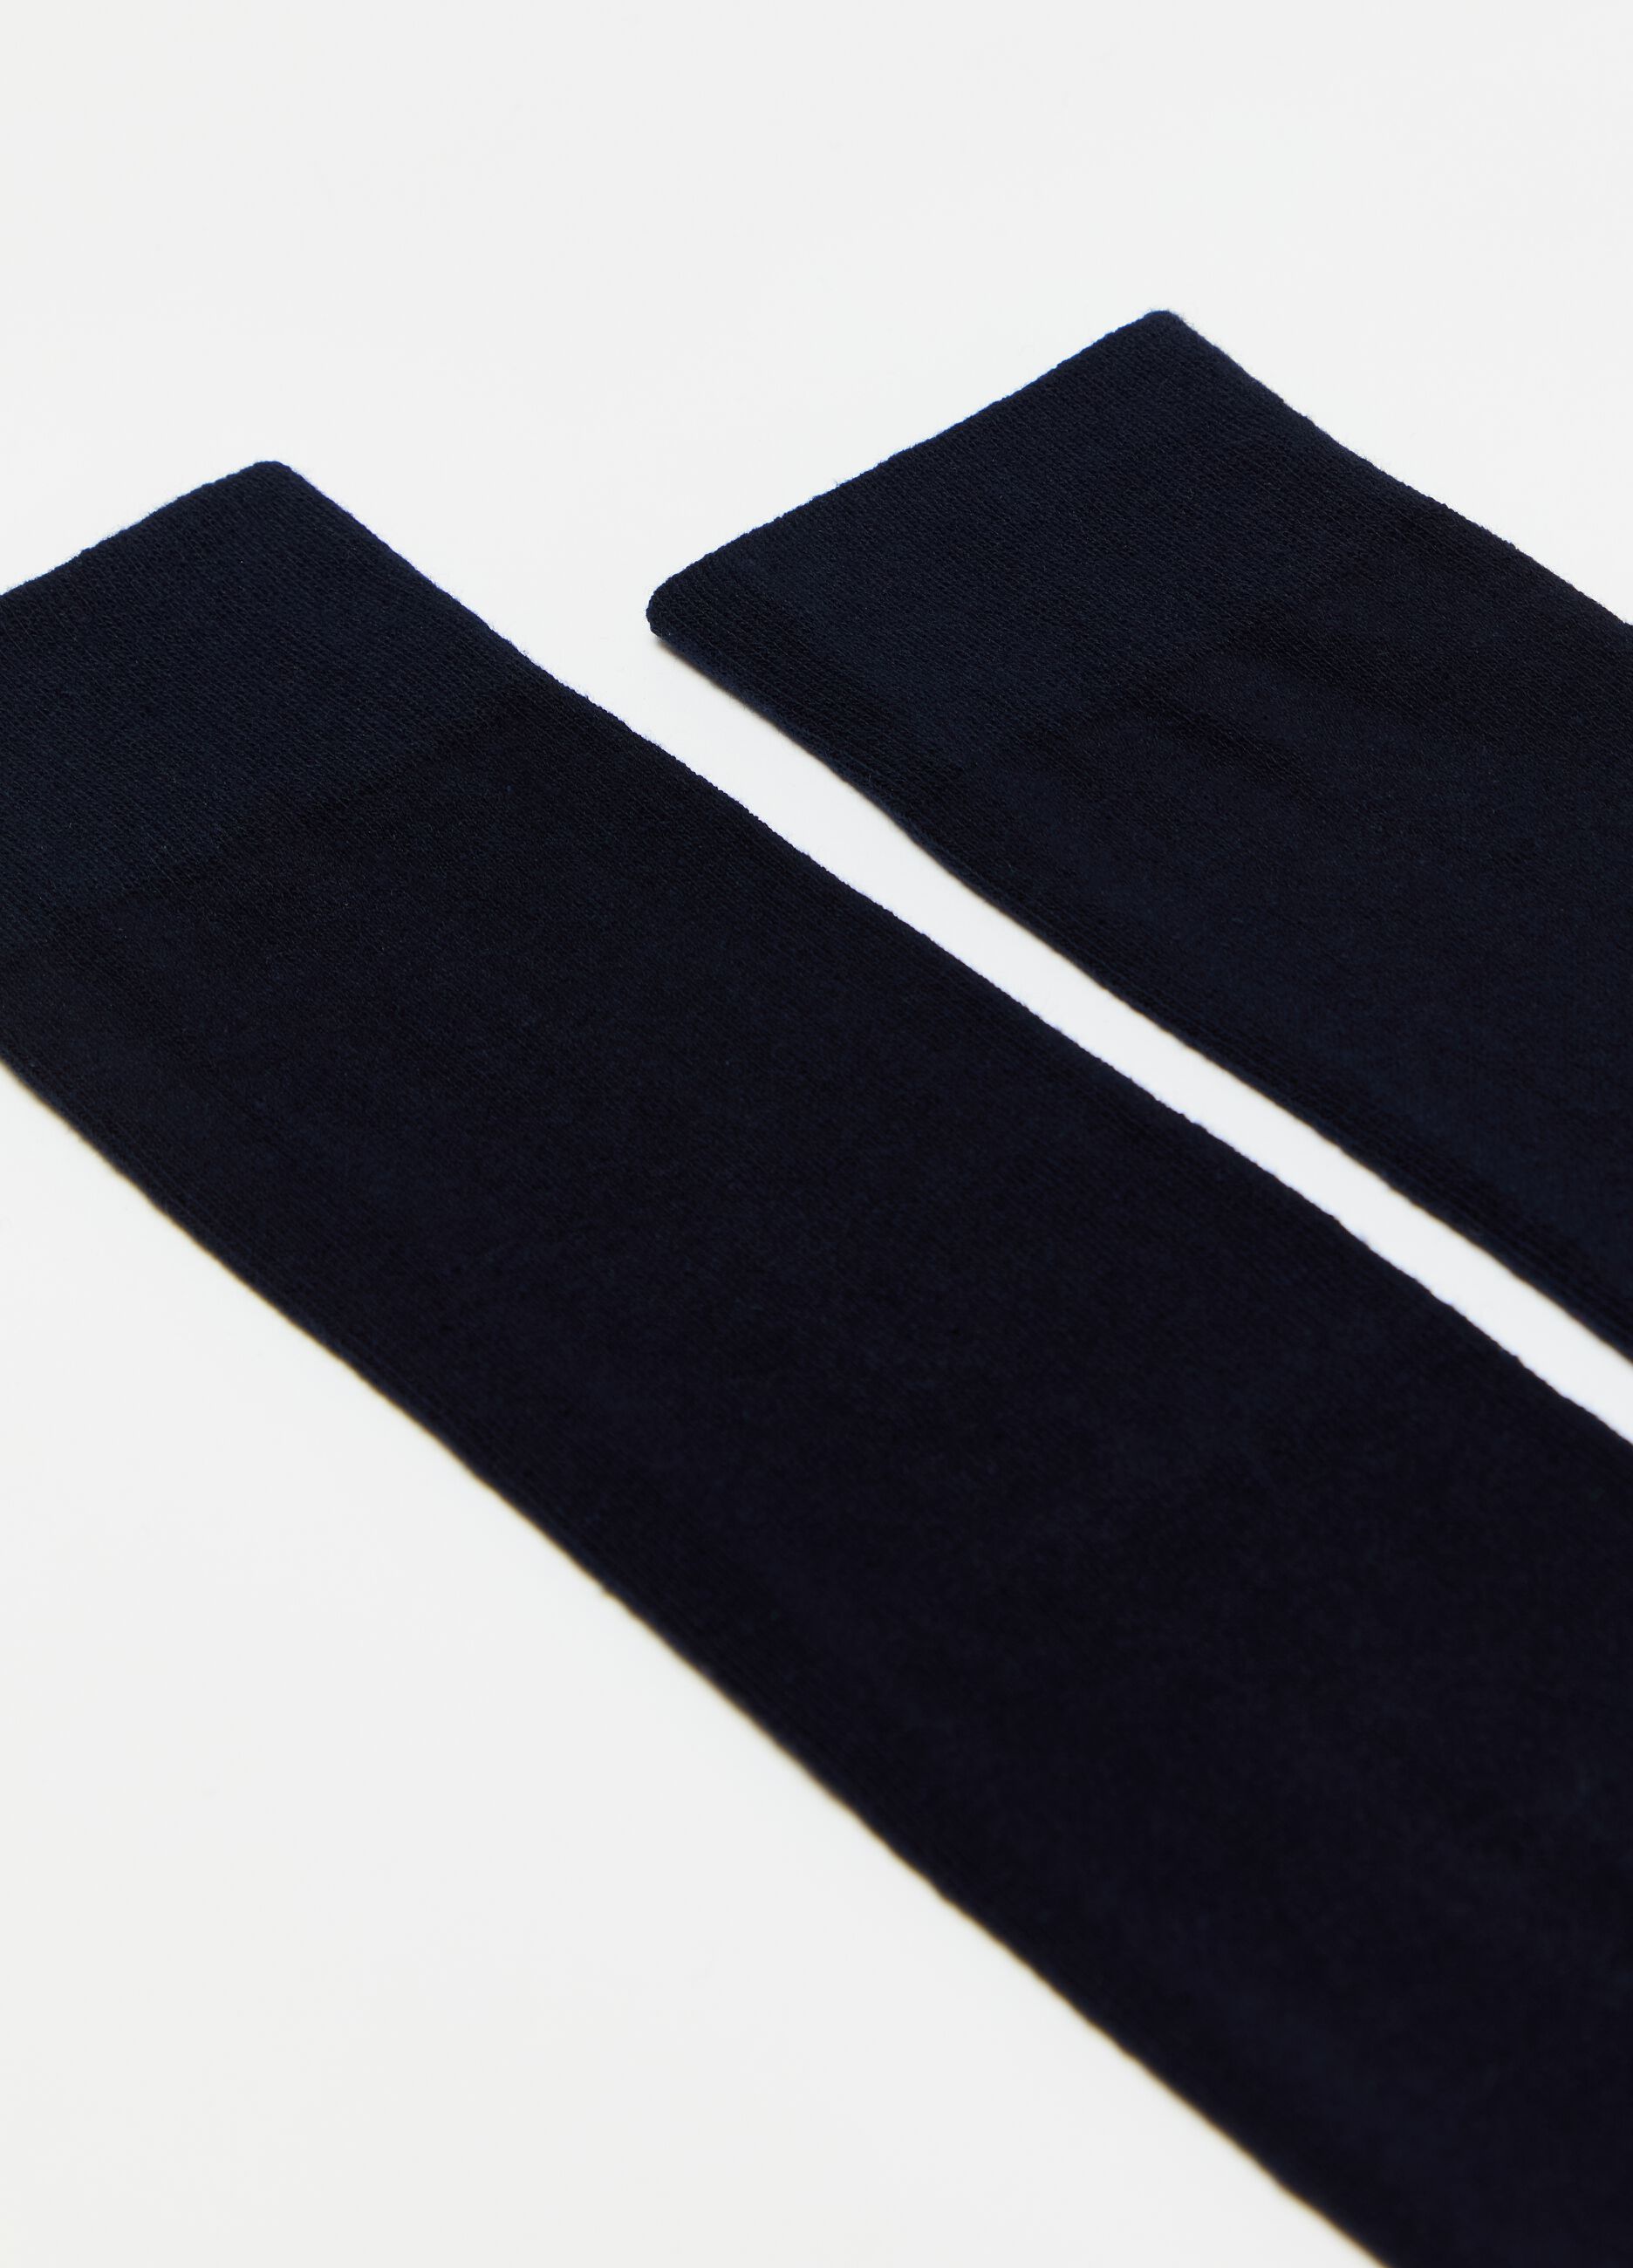 Seven-pair multi-pack long socks